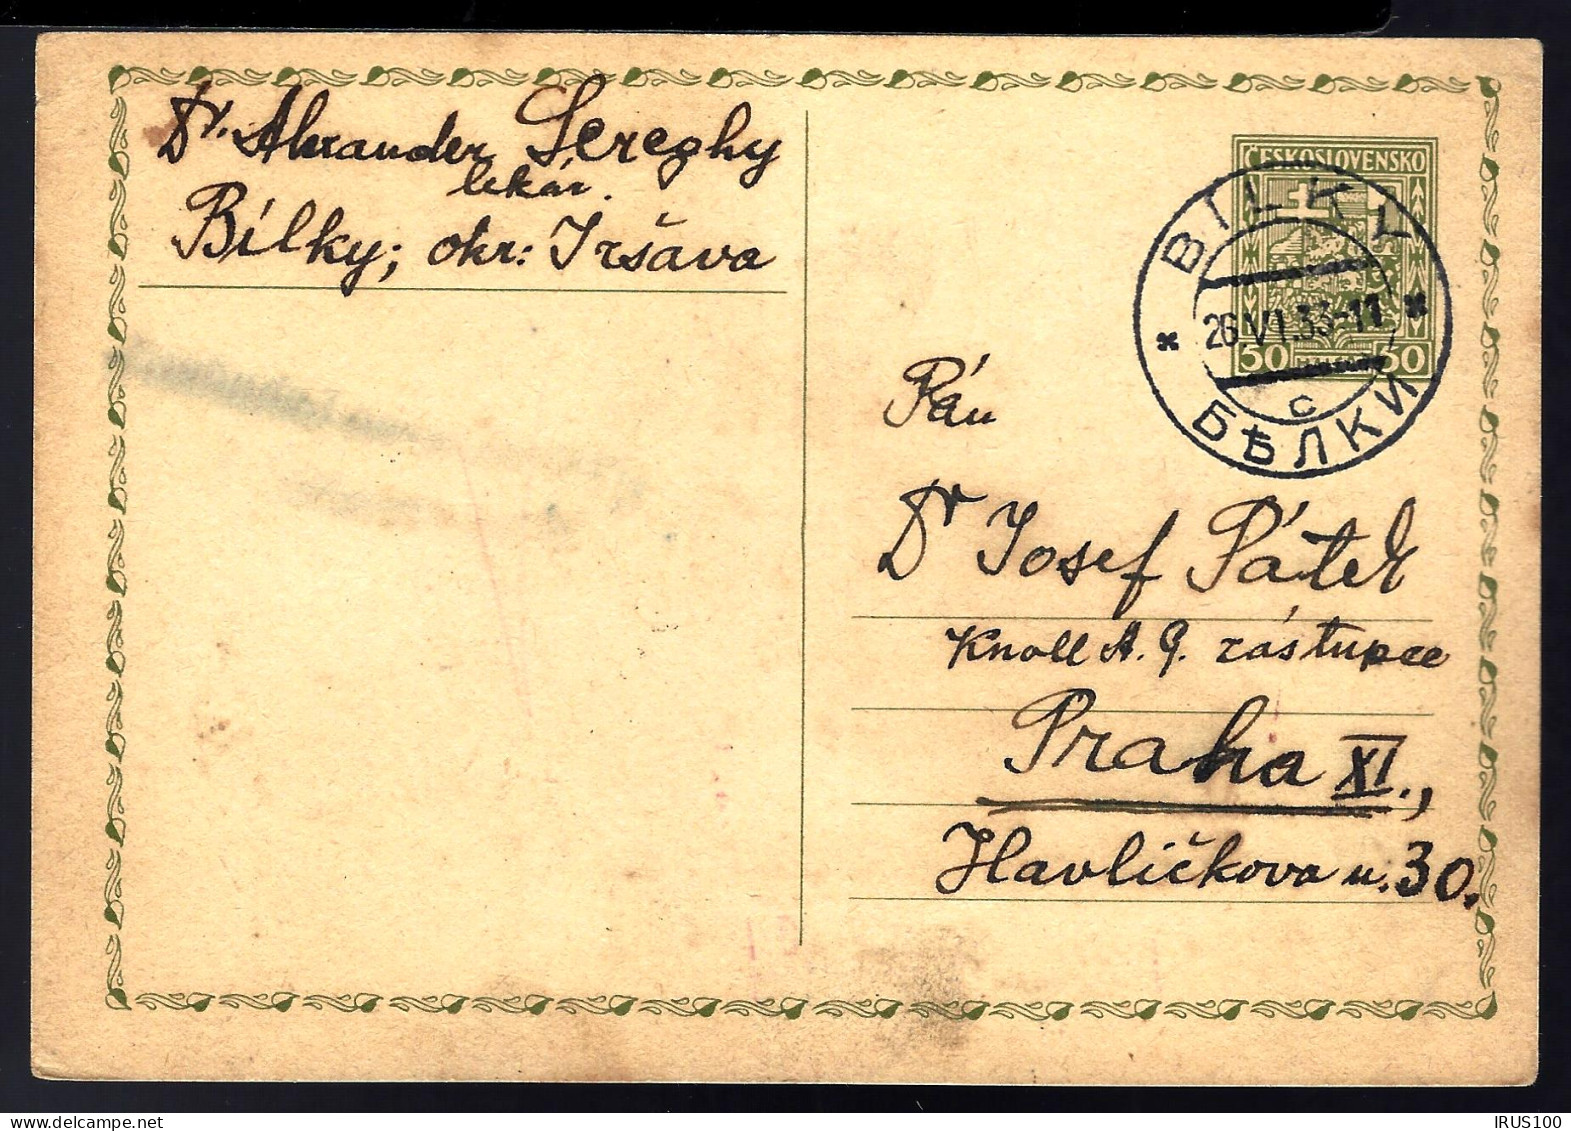 ENTIER POSTAL - GANZSACHE - TCHECOSLOVAQUIE / BILKY - 1933 - - Postcards